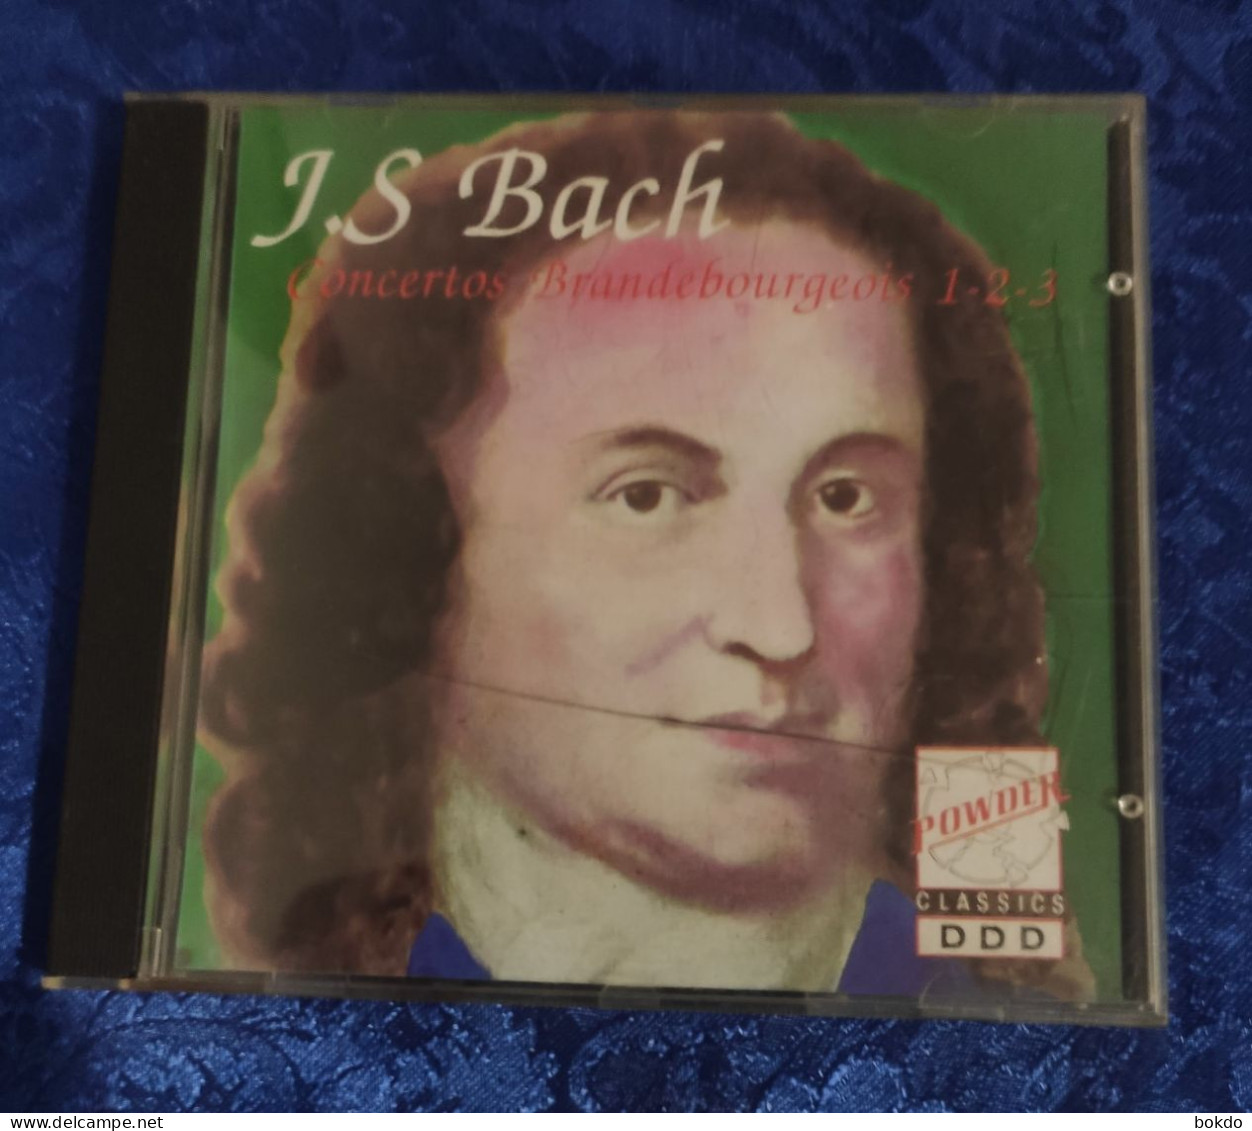 J.S. BACH - Concertos - Classica